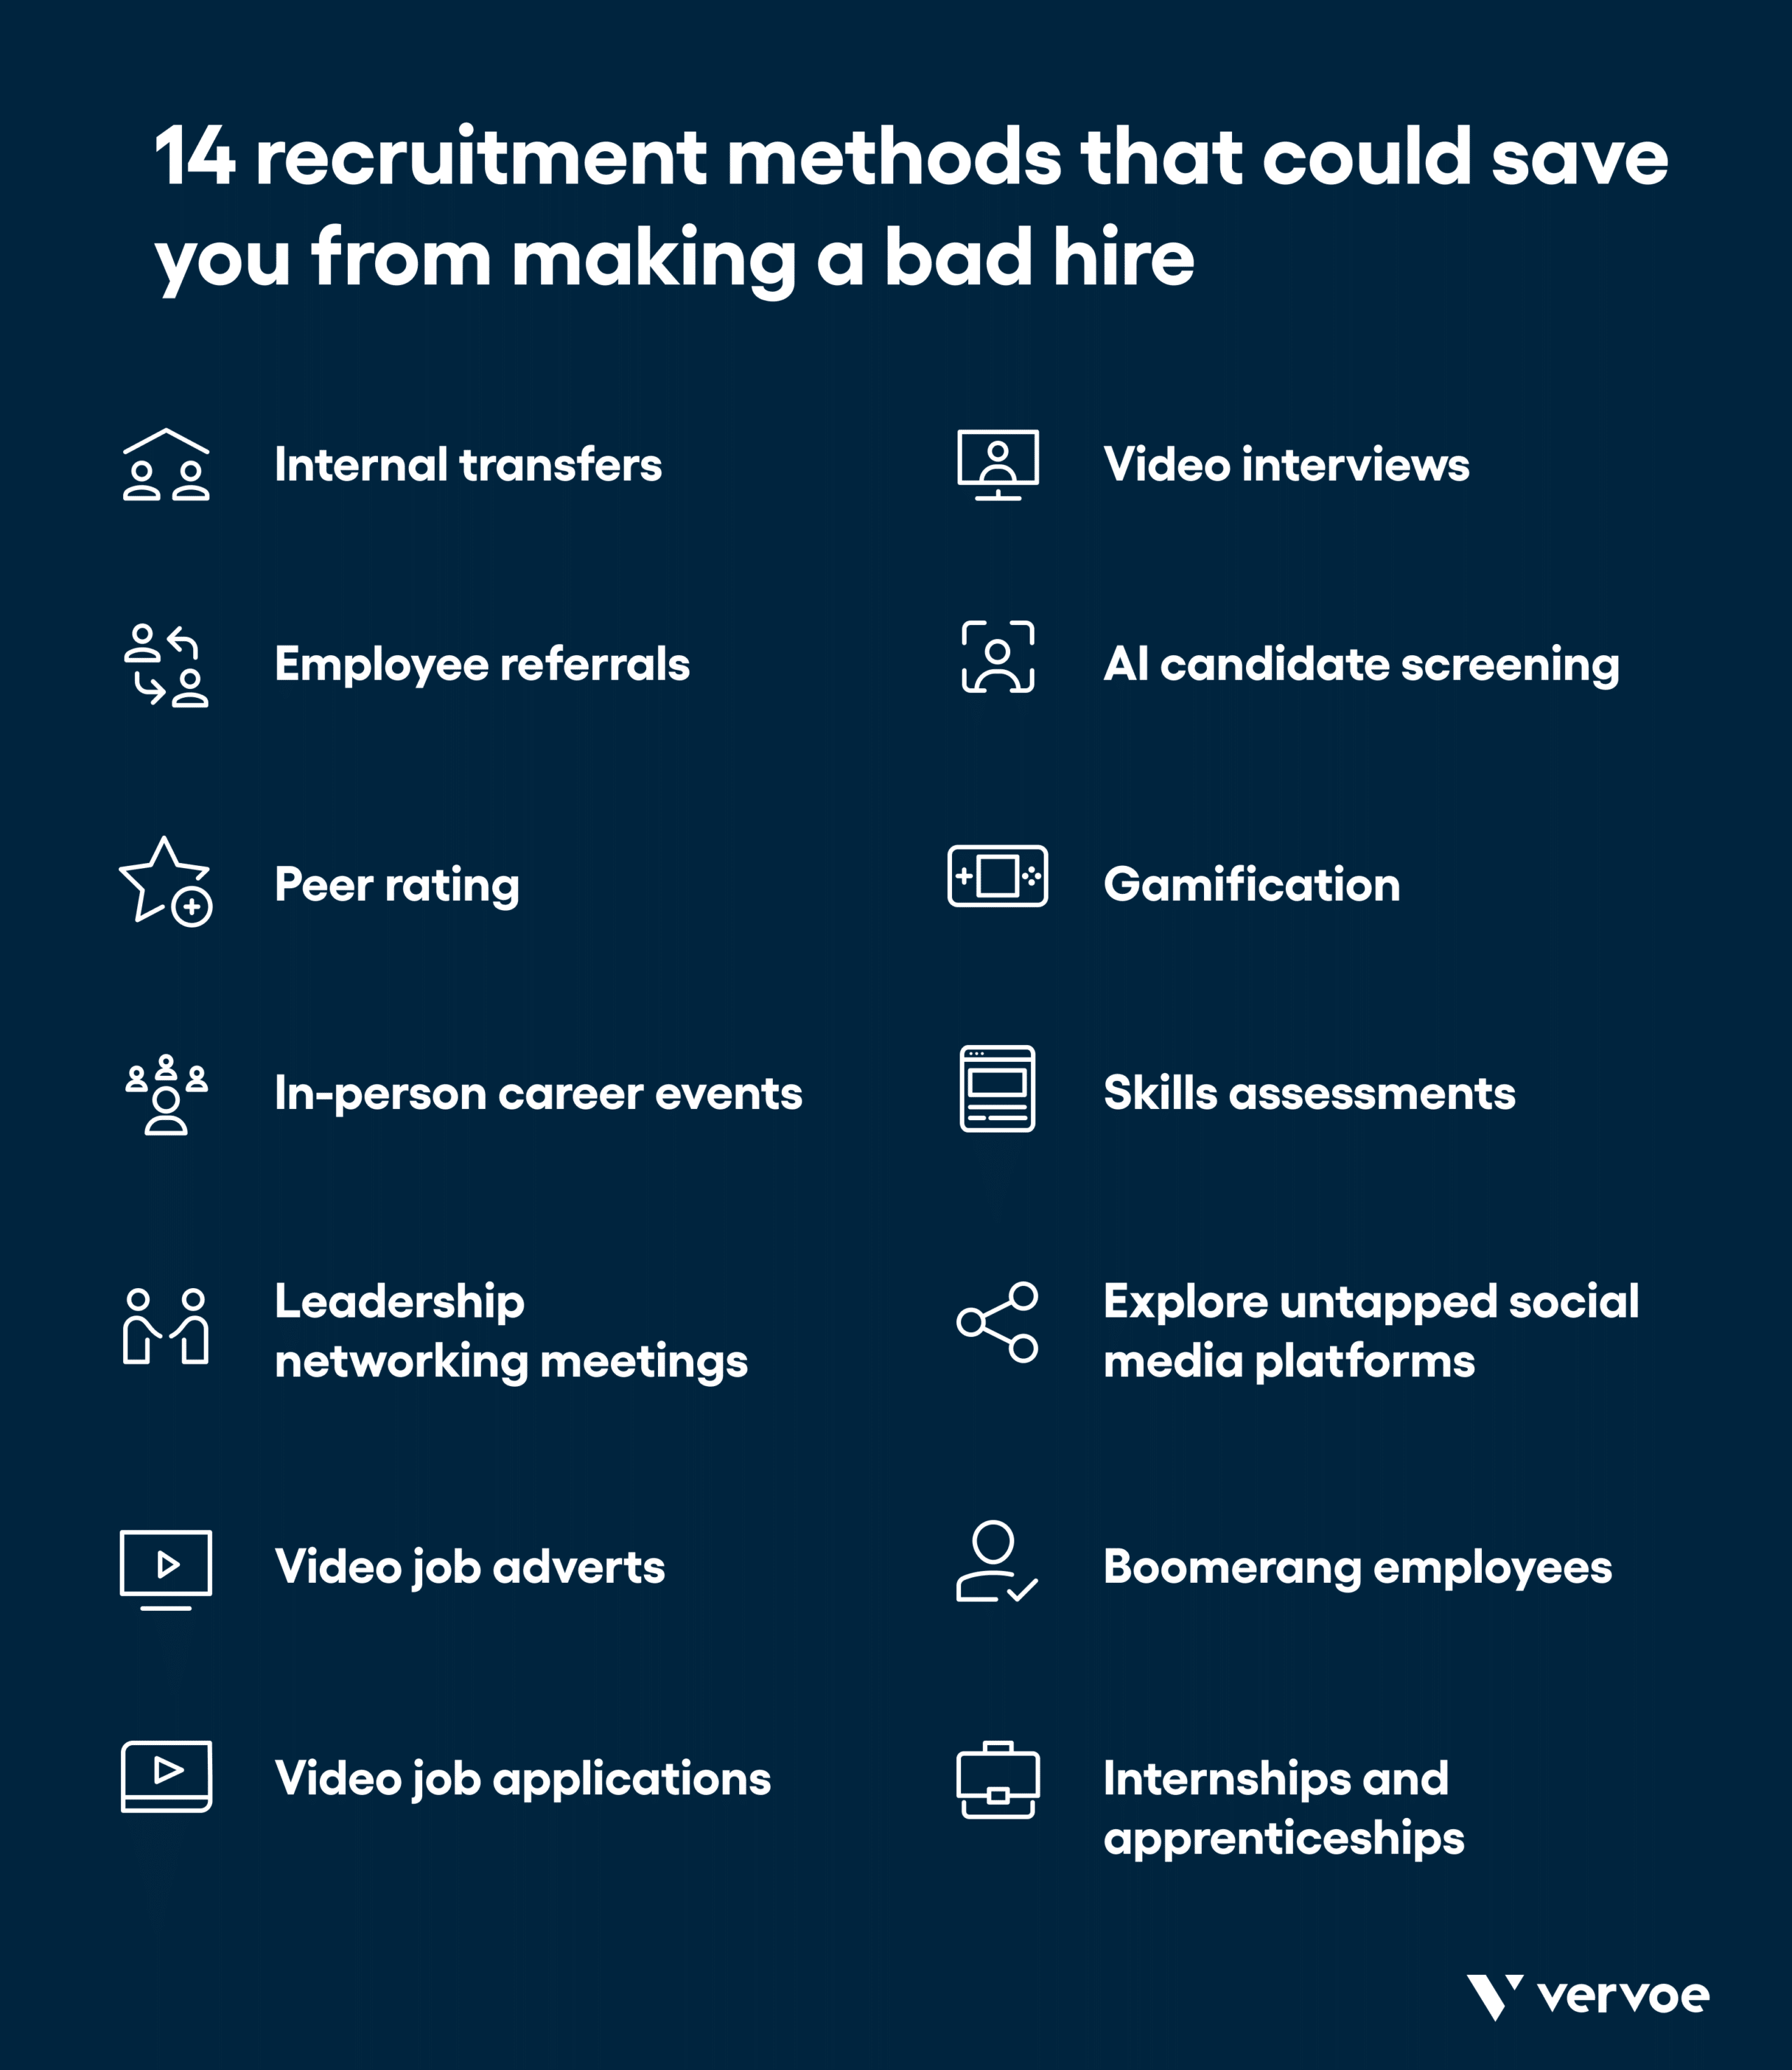 下图显示了14种招聘方法，可以帮助你避免招错人